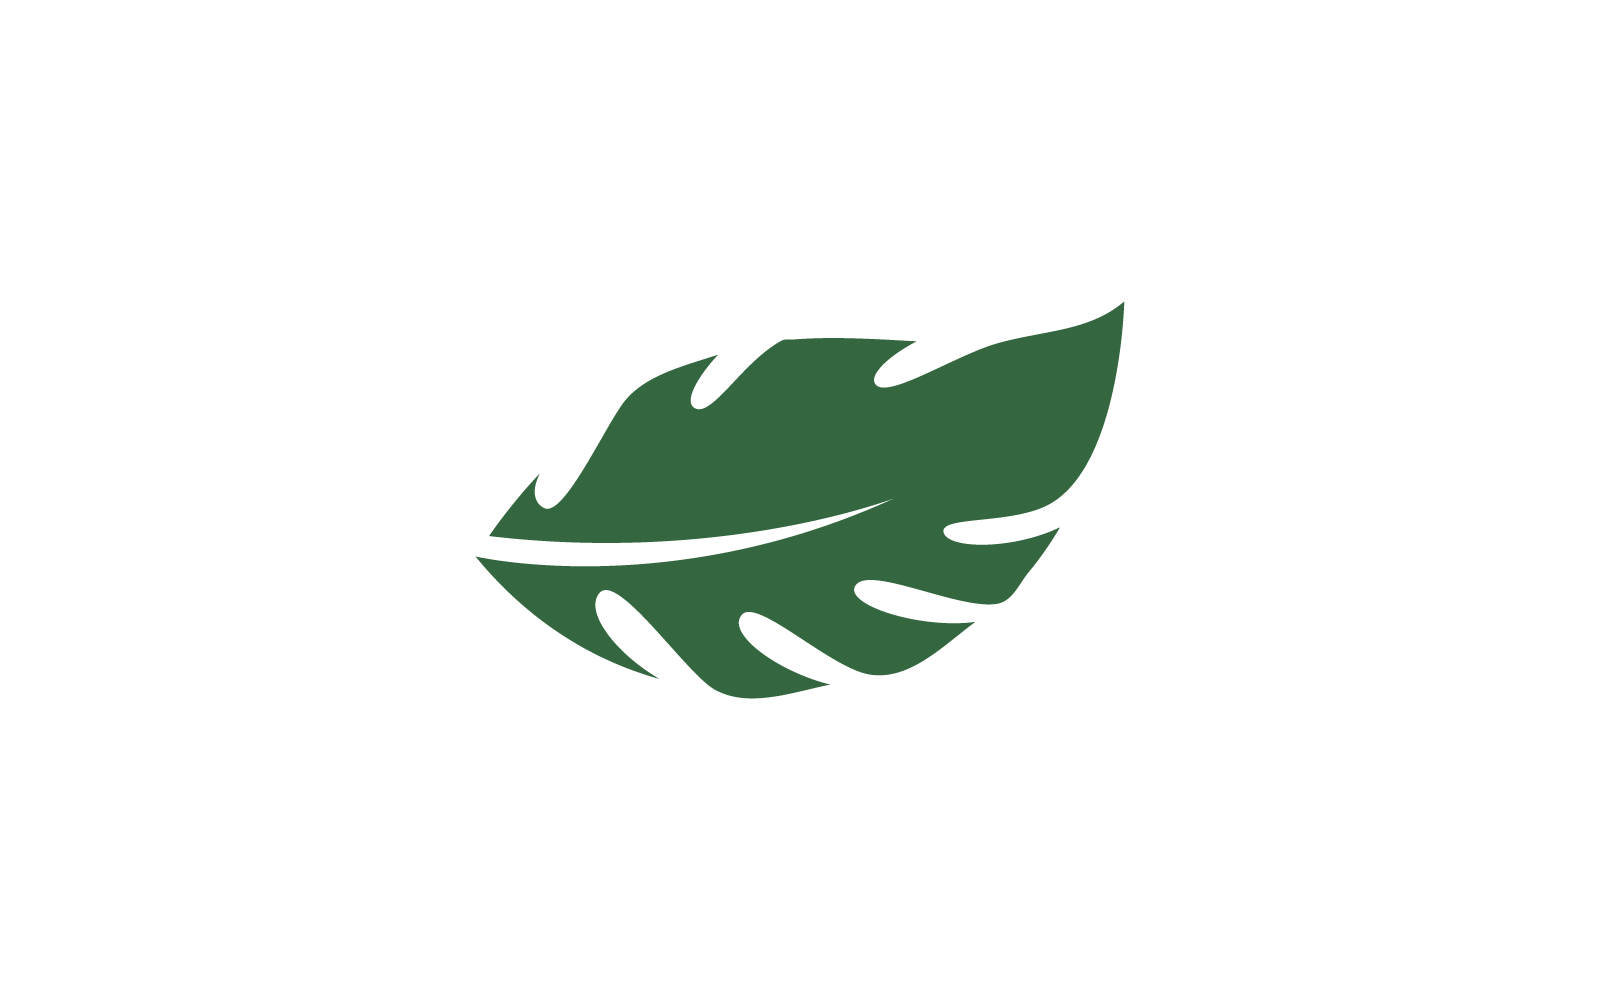 Monstera leaf logo vector illustration flat design template